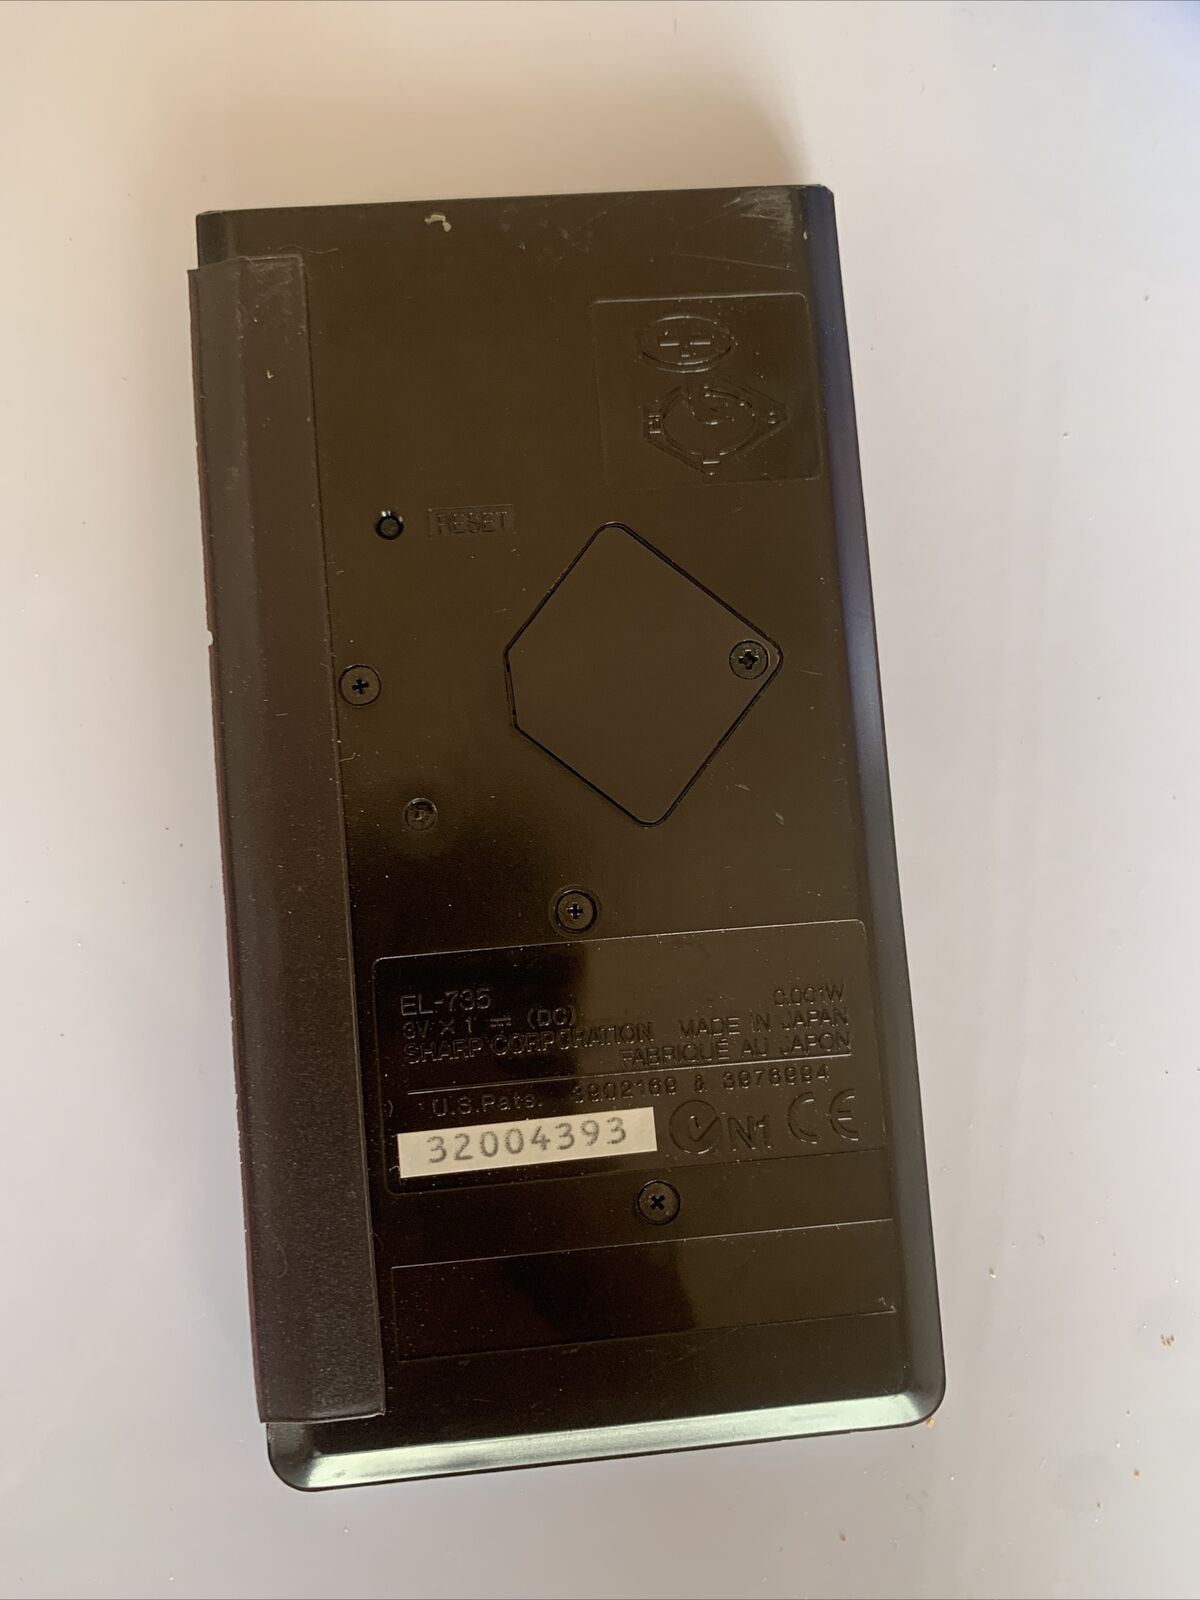 Vintage Sharp Business Financial Calculator EL-735